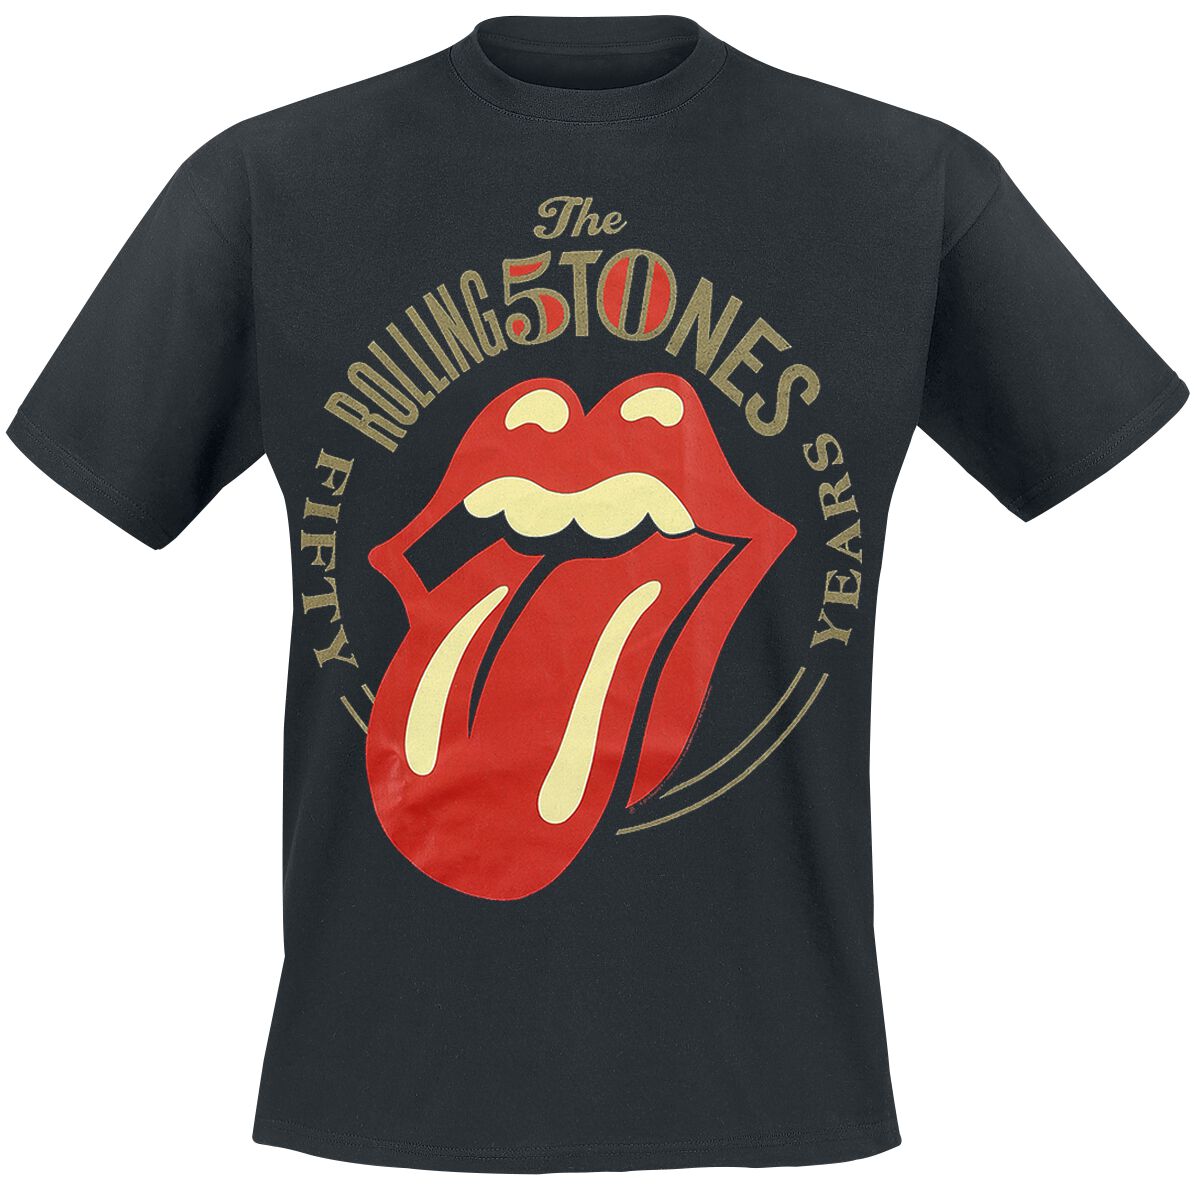 The Rolling Stones T-Shirt - 50 Years - M bis 3XL - für Männer - Größe XL - schwarz  - Lizenziertes Merchandise!